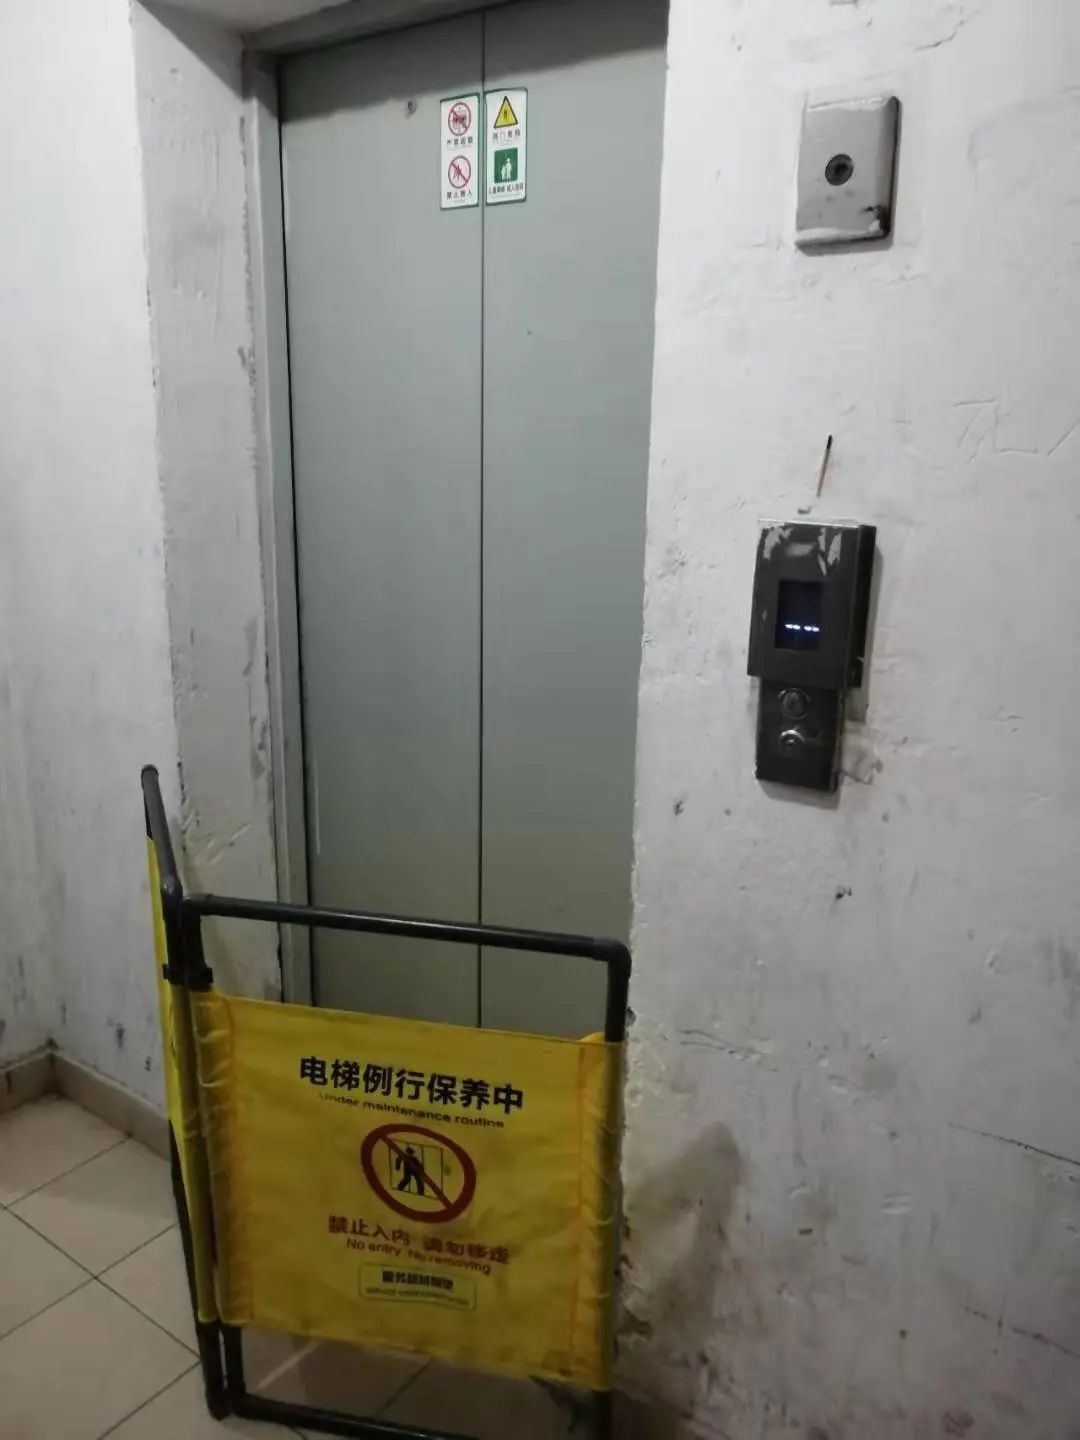 "电梯故障了"一通紧急电话,松江这群人立刻赶到现场